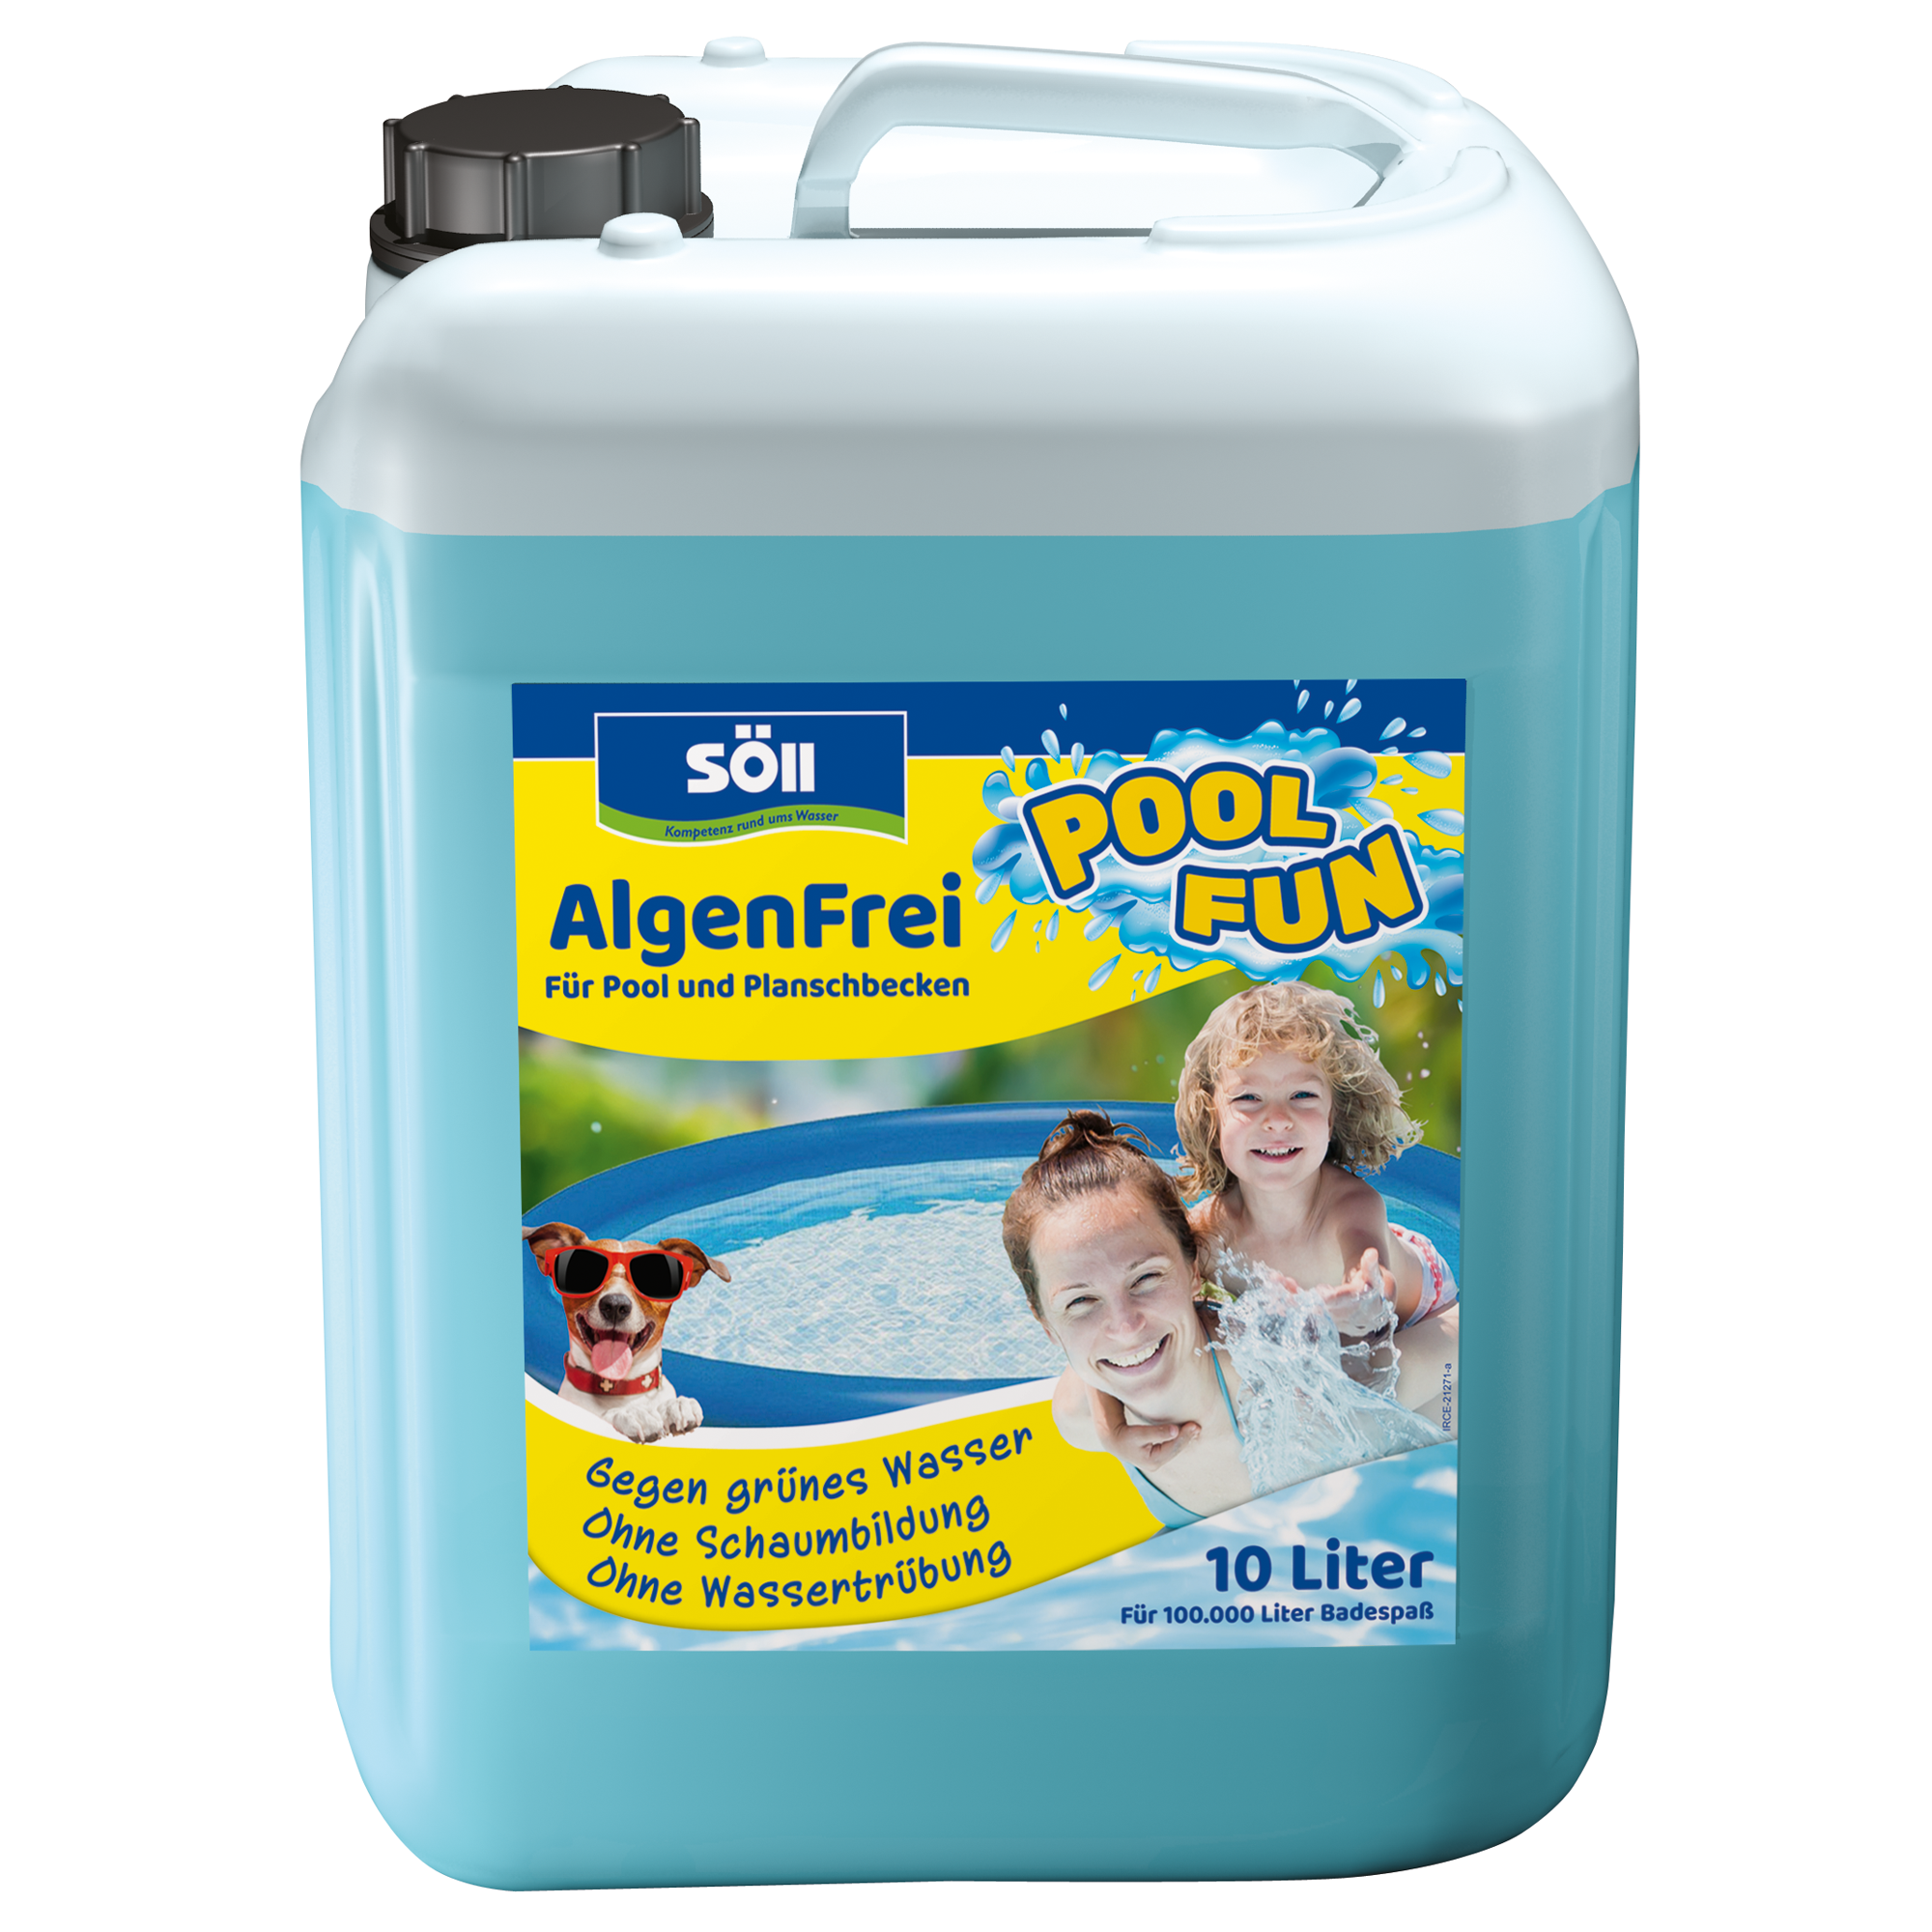 Algenentferner 'AlgenFrei' 10 Liter + product picture